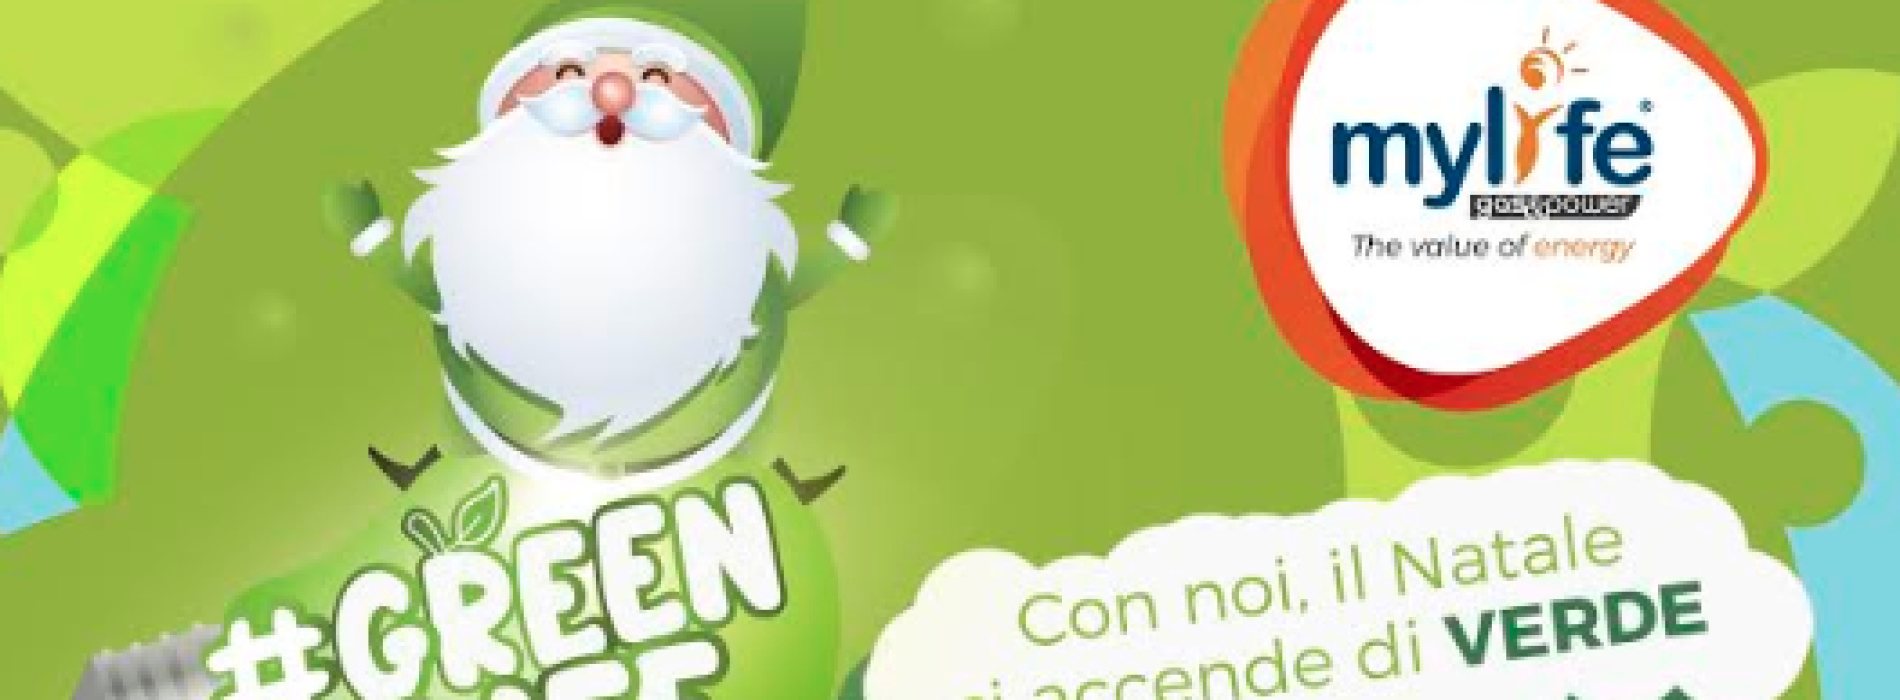 Ambiente. Greenlife e il Natale si accende di verde!